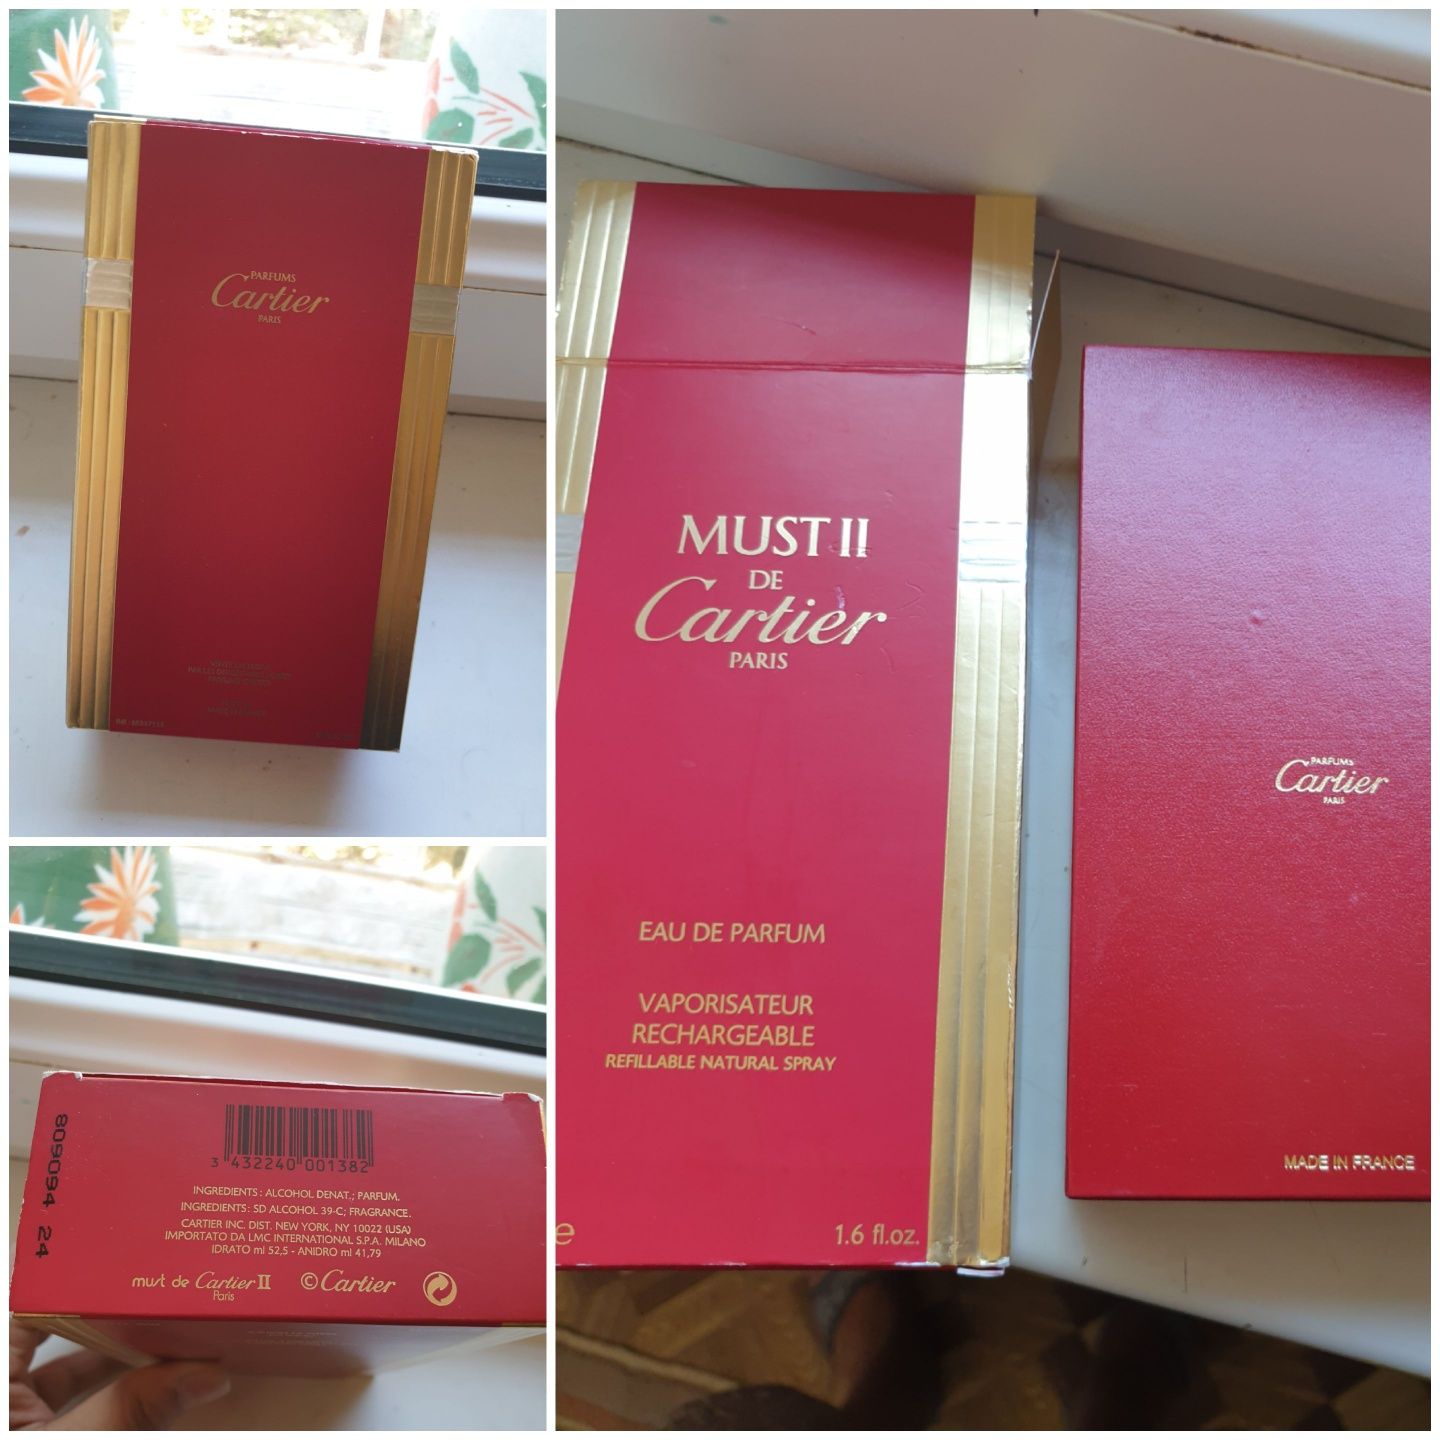 Маст 2  от Картье(Must II От Cartier) (Коллекционное издание .